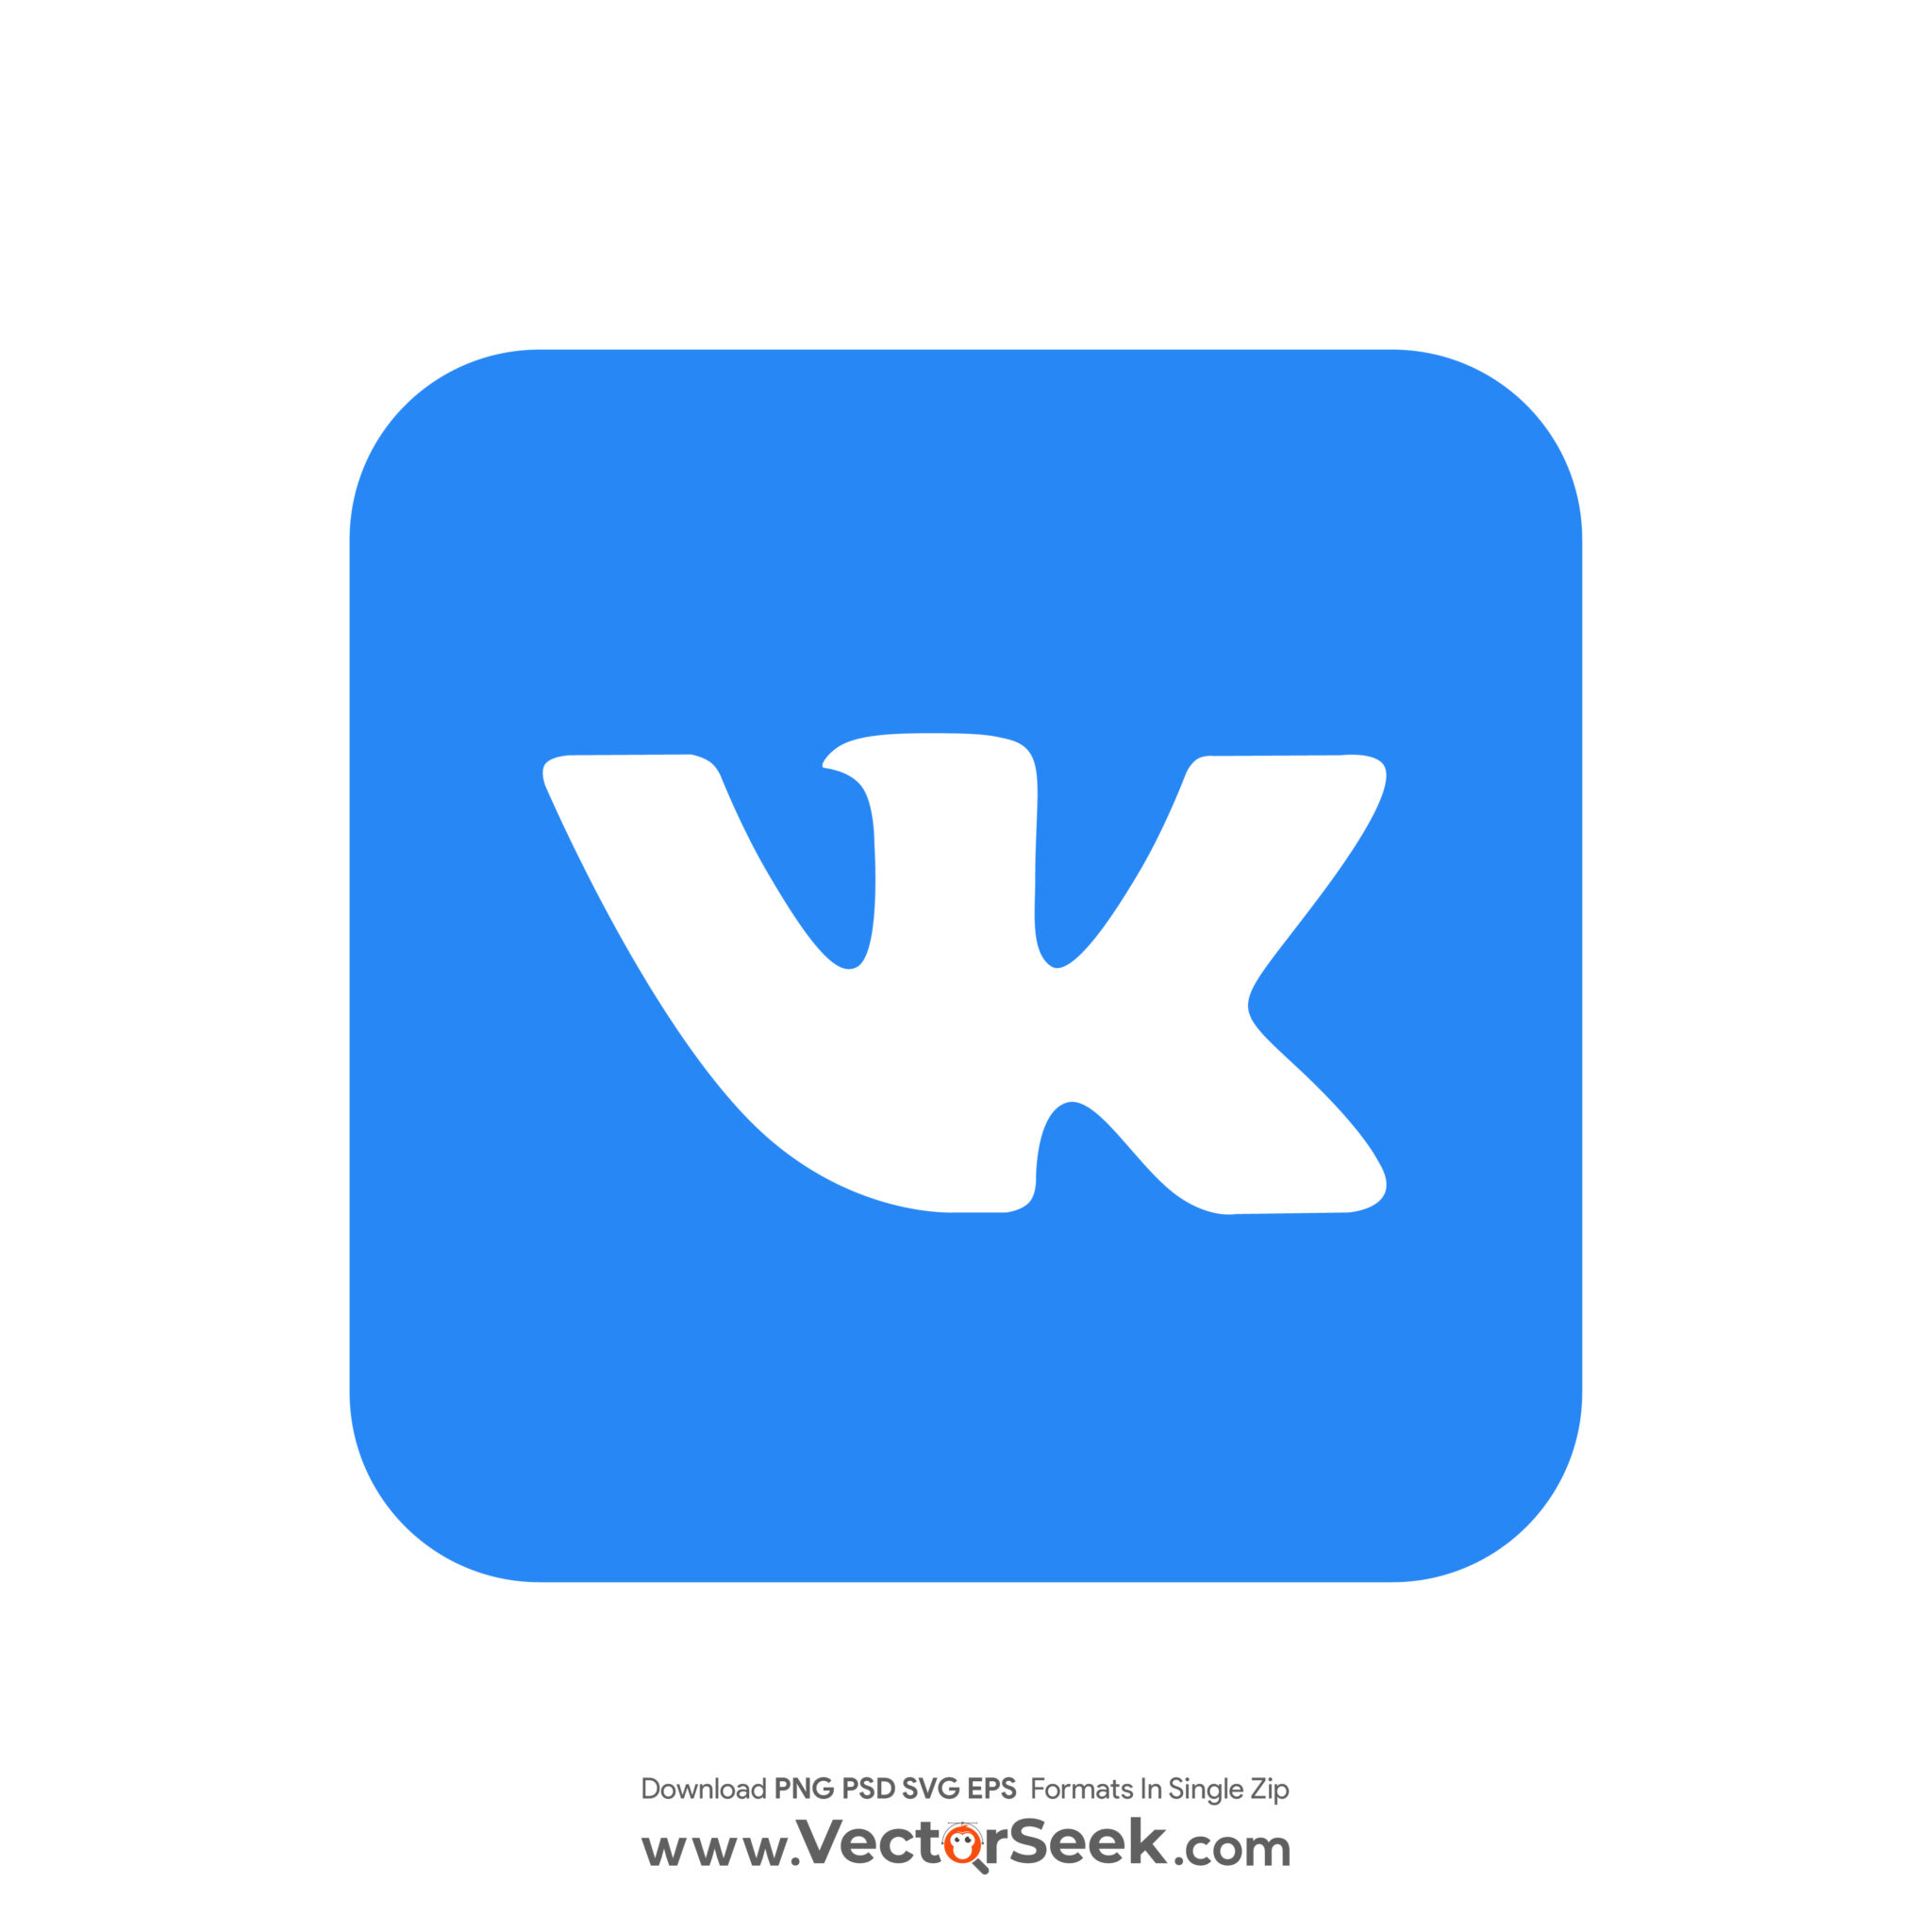 Красивый логотип ВК. ВК лого стильное. Красивый арт ВКОНТАКТЕ логотип. Логотип ВК В стиле манги. Инди в контакте